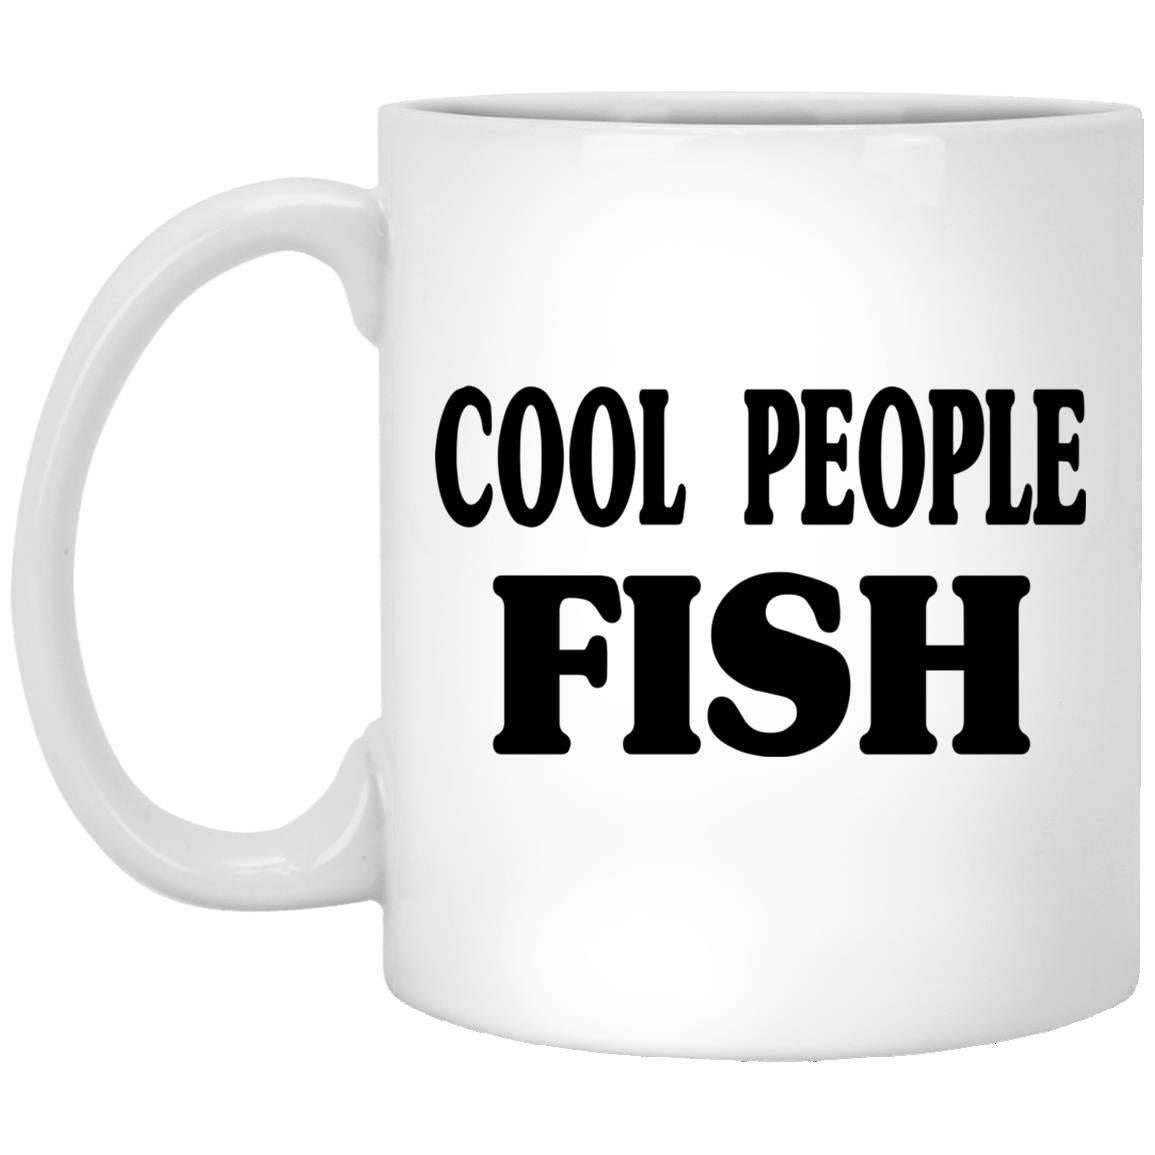 Cool people fish 11oz white mug